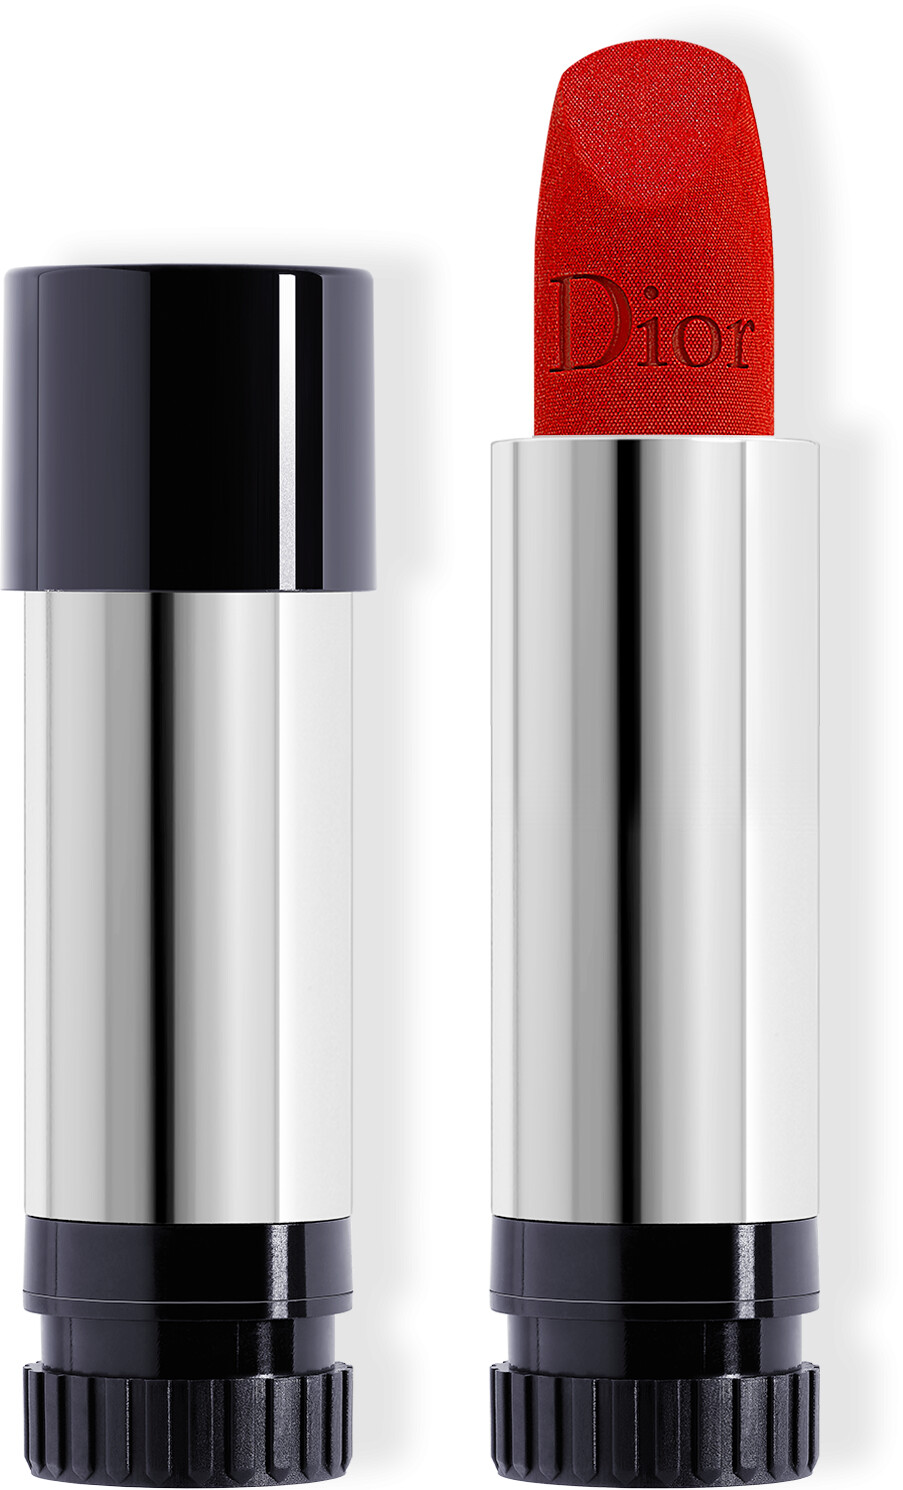 DIOR Rouge Dior Lipstick Refill 3.5g 999 - Velvet